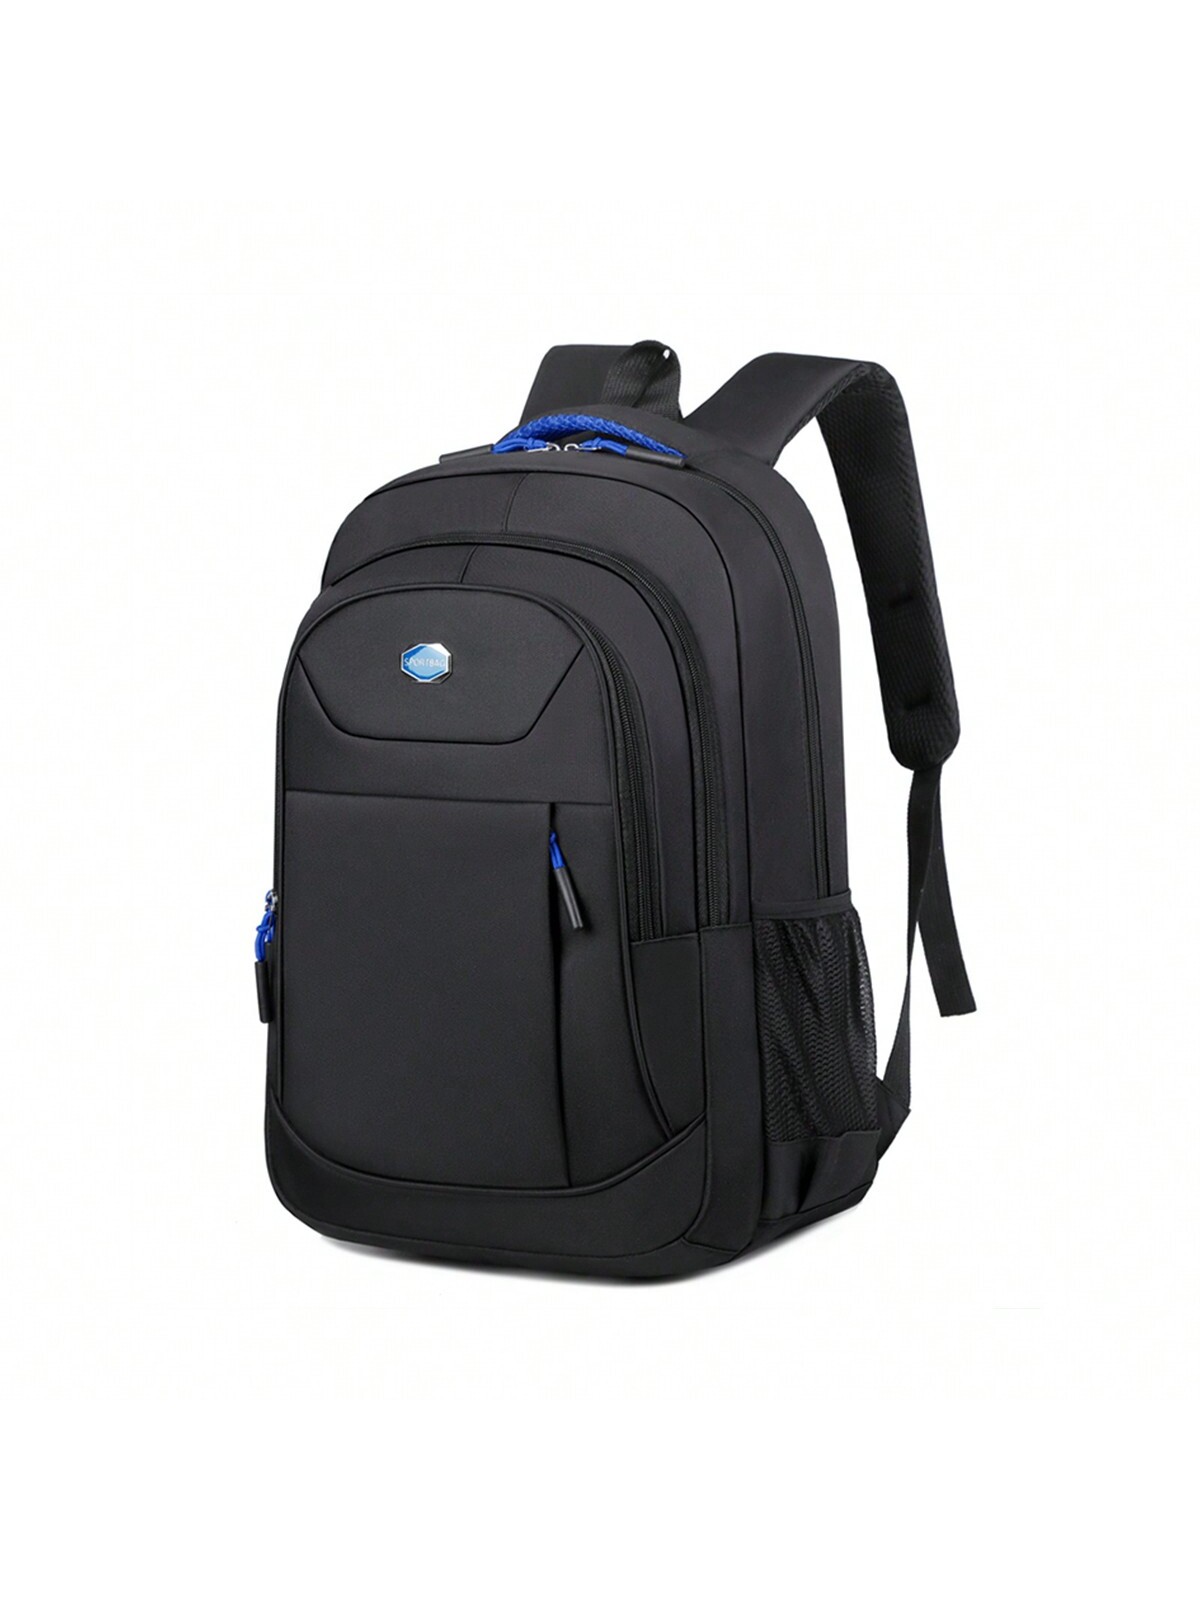 Мужской однотонный деловой рюкзак большой вместимости с защитой от брызг, синий